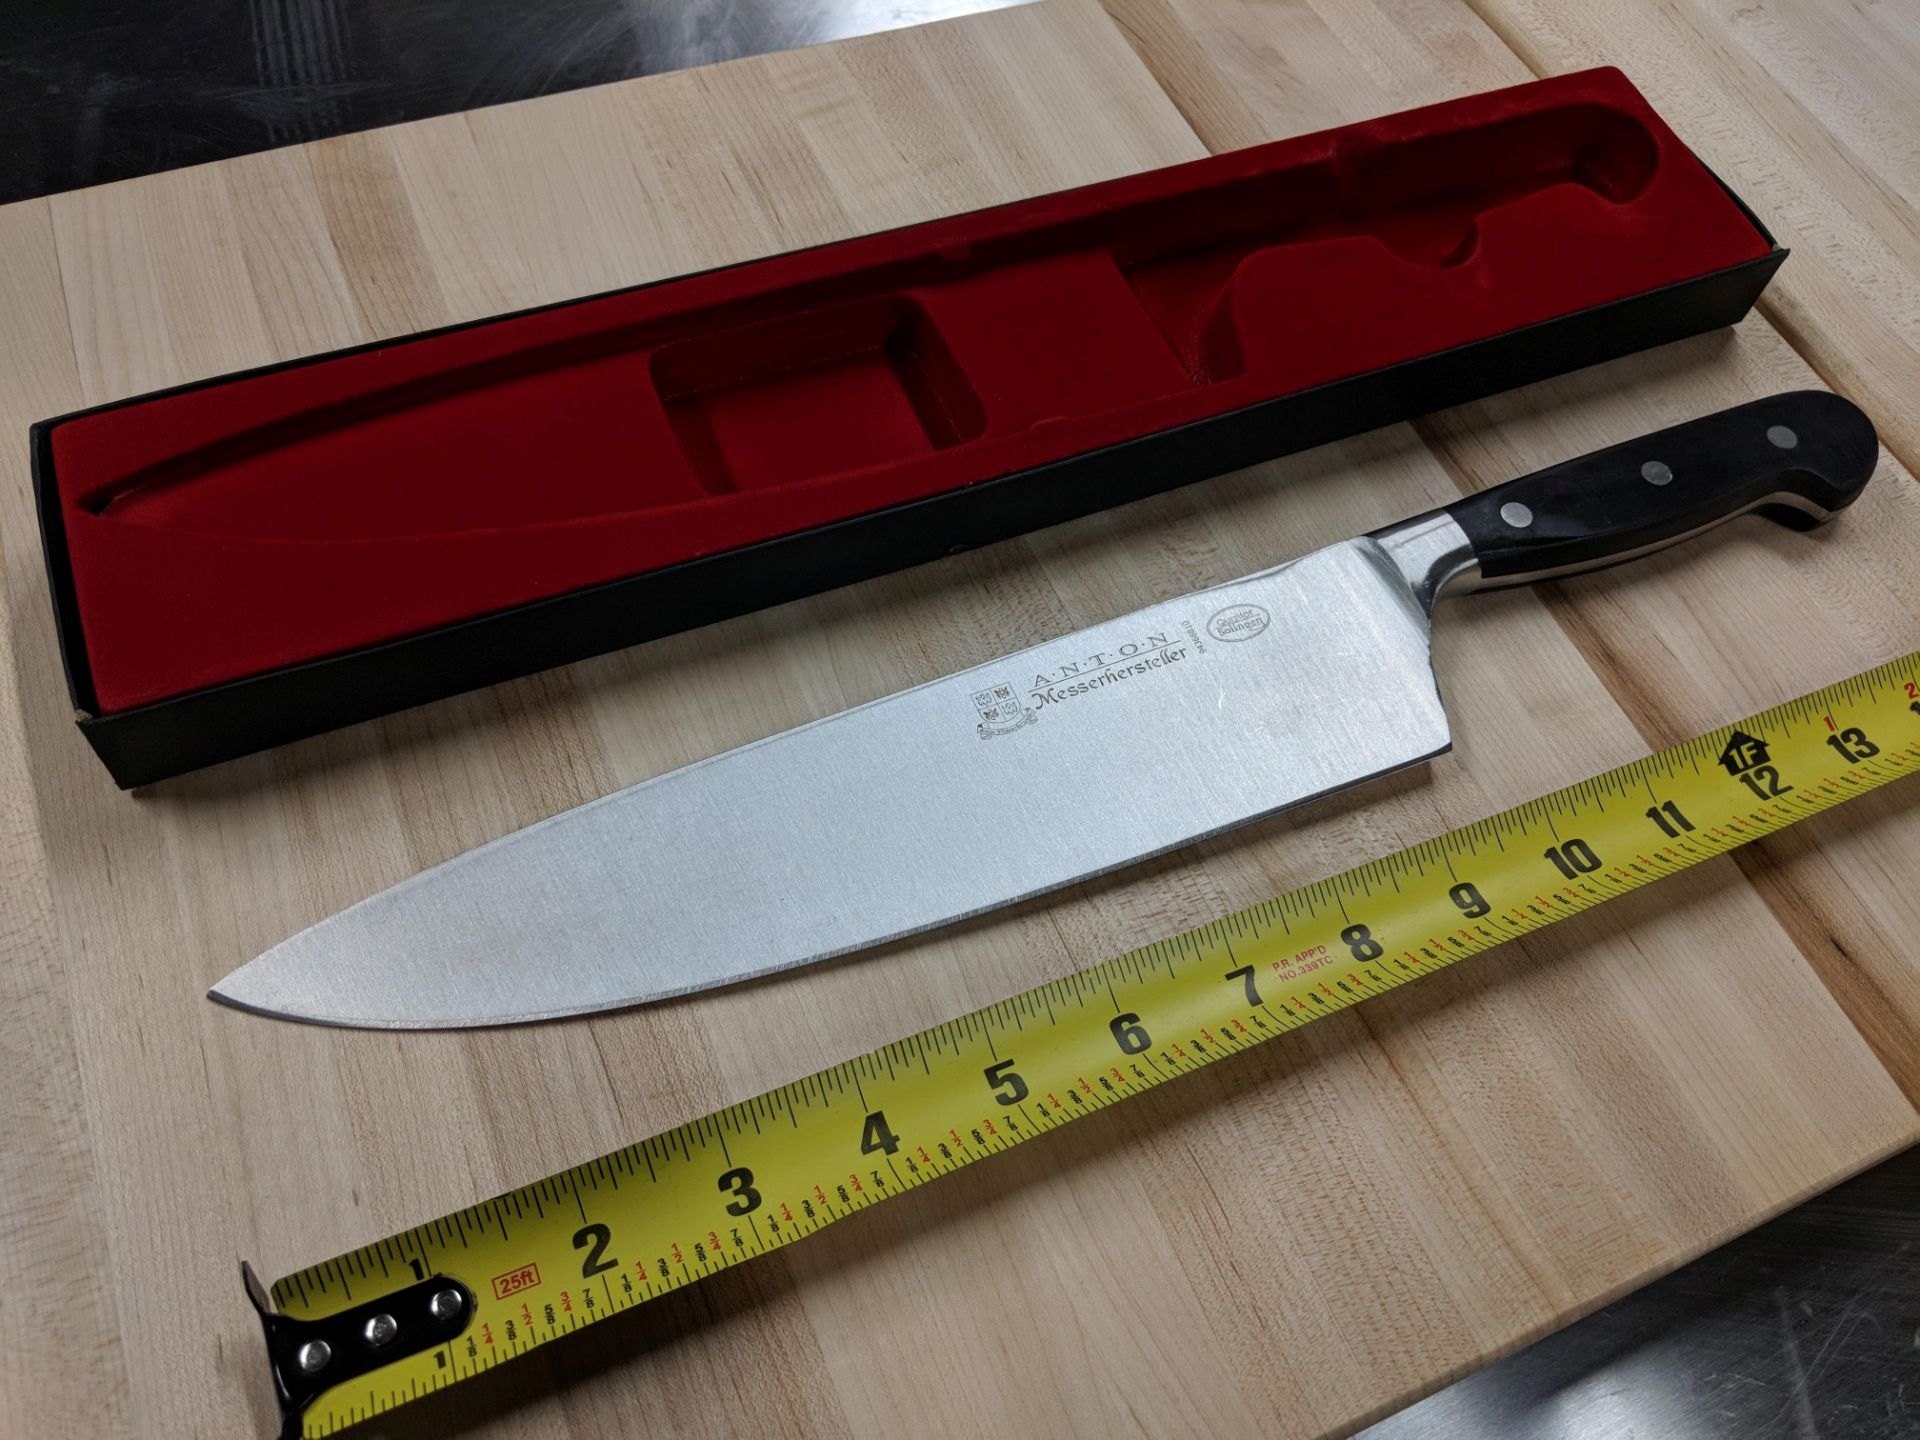 10” Premium Anton Medium Forged Cook's Knife